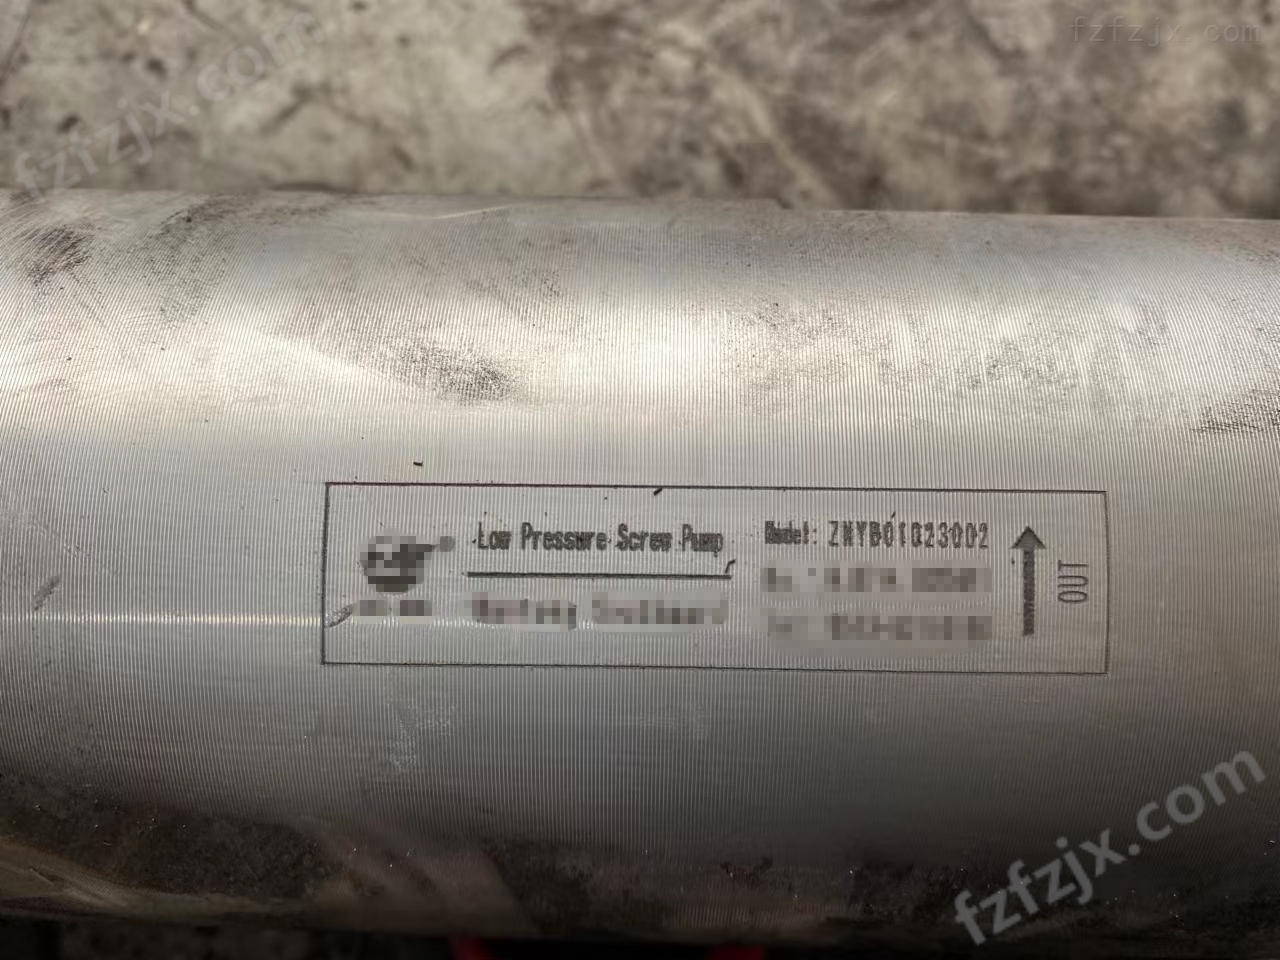 高炉炉前液压站ZNYB01020602低压油泵